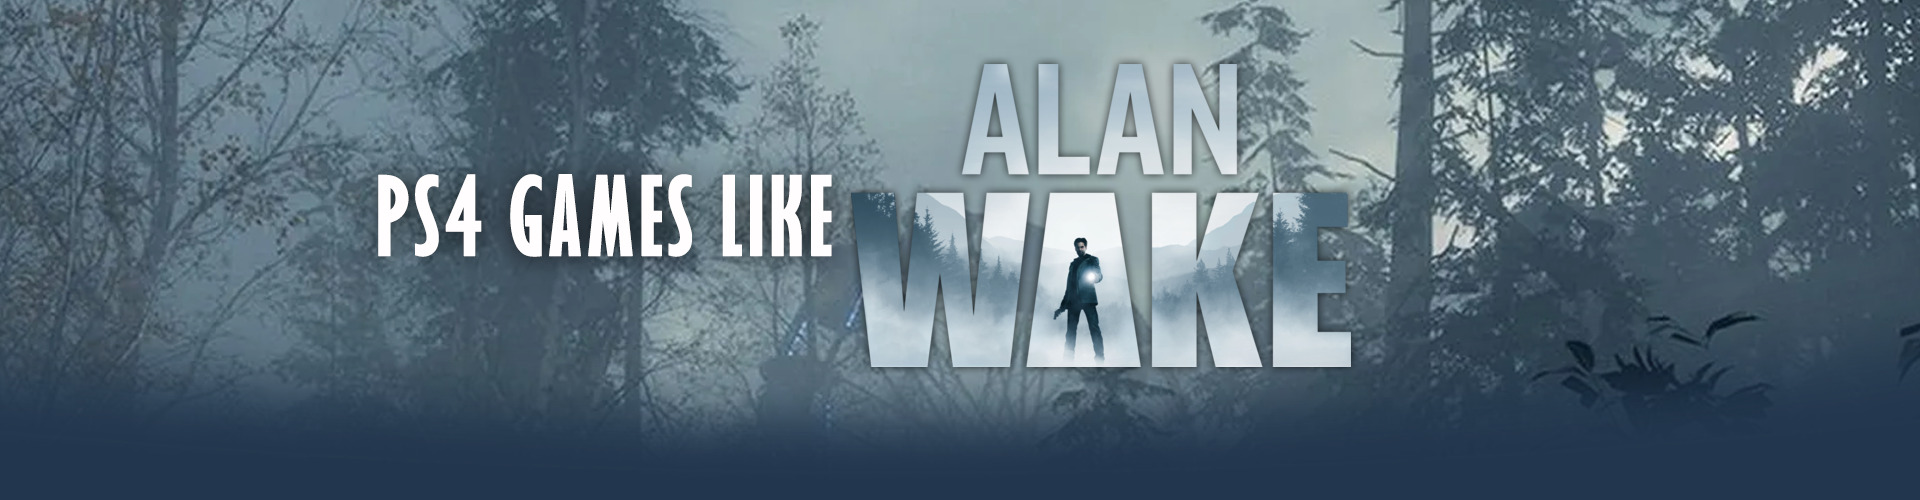 Juegos de PS4 como Alan Wake